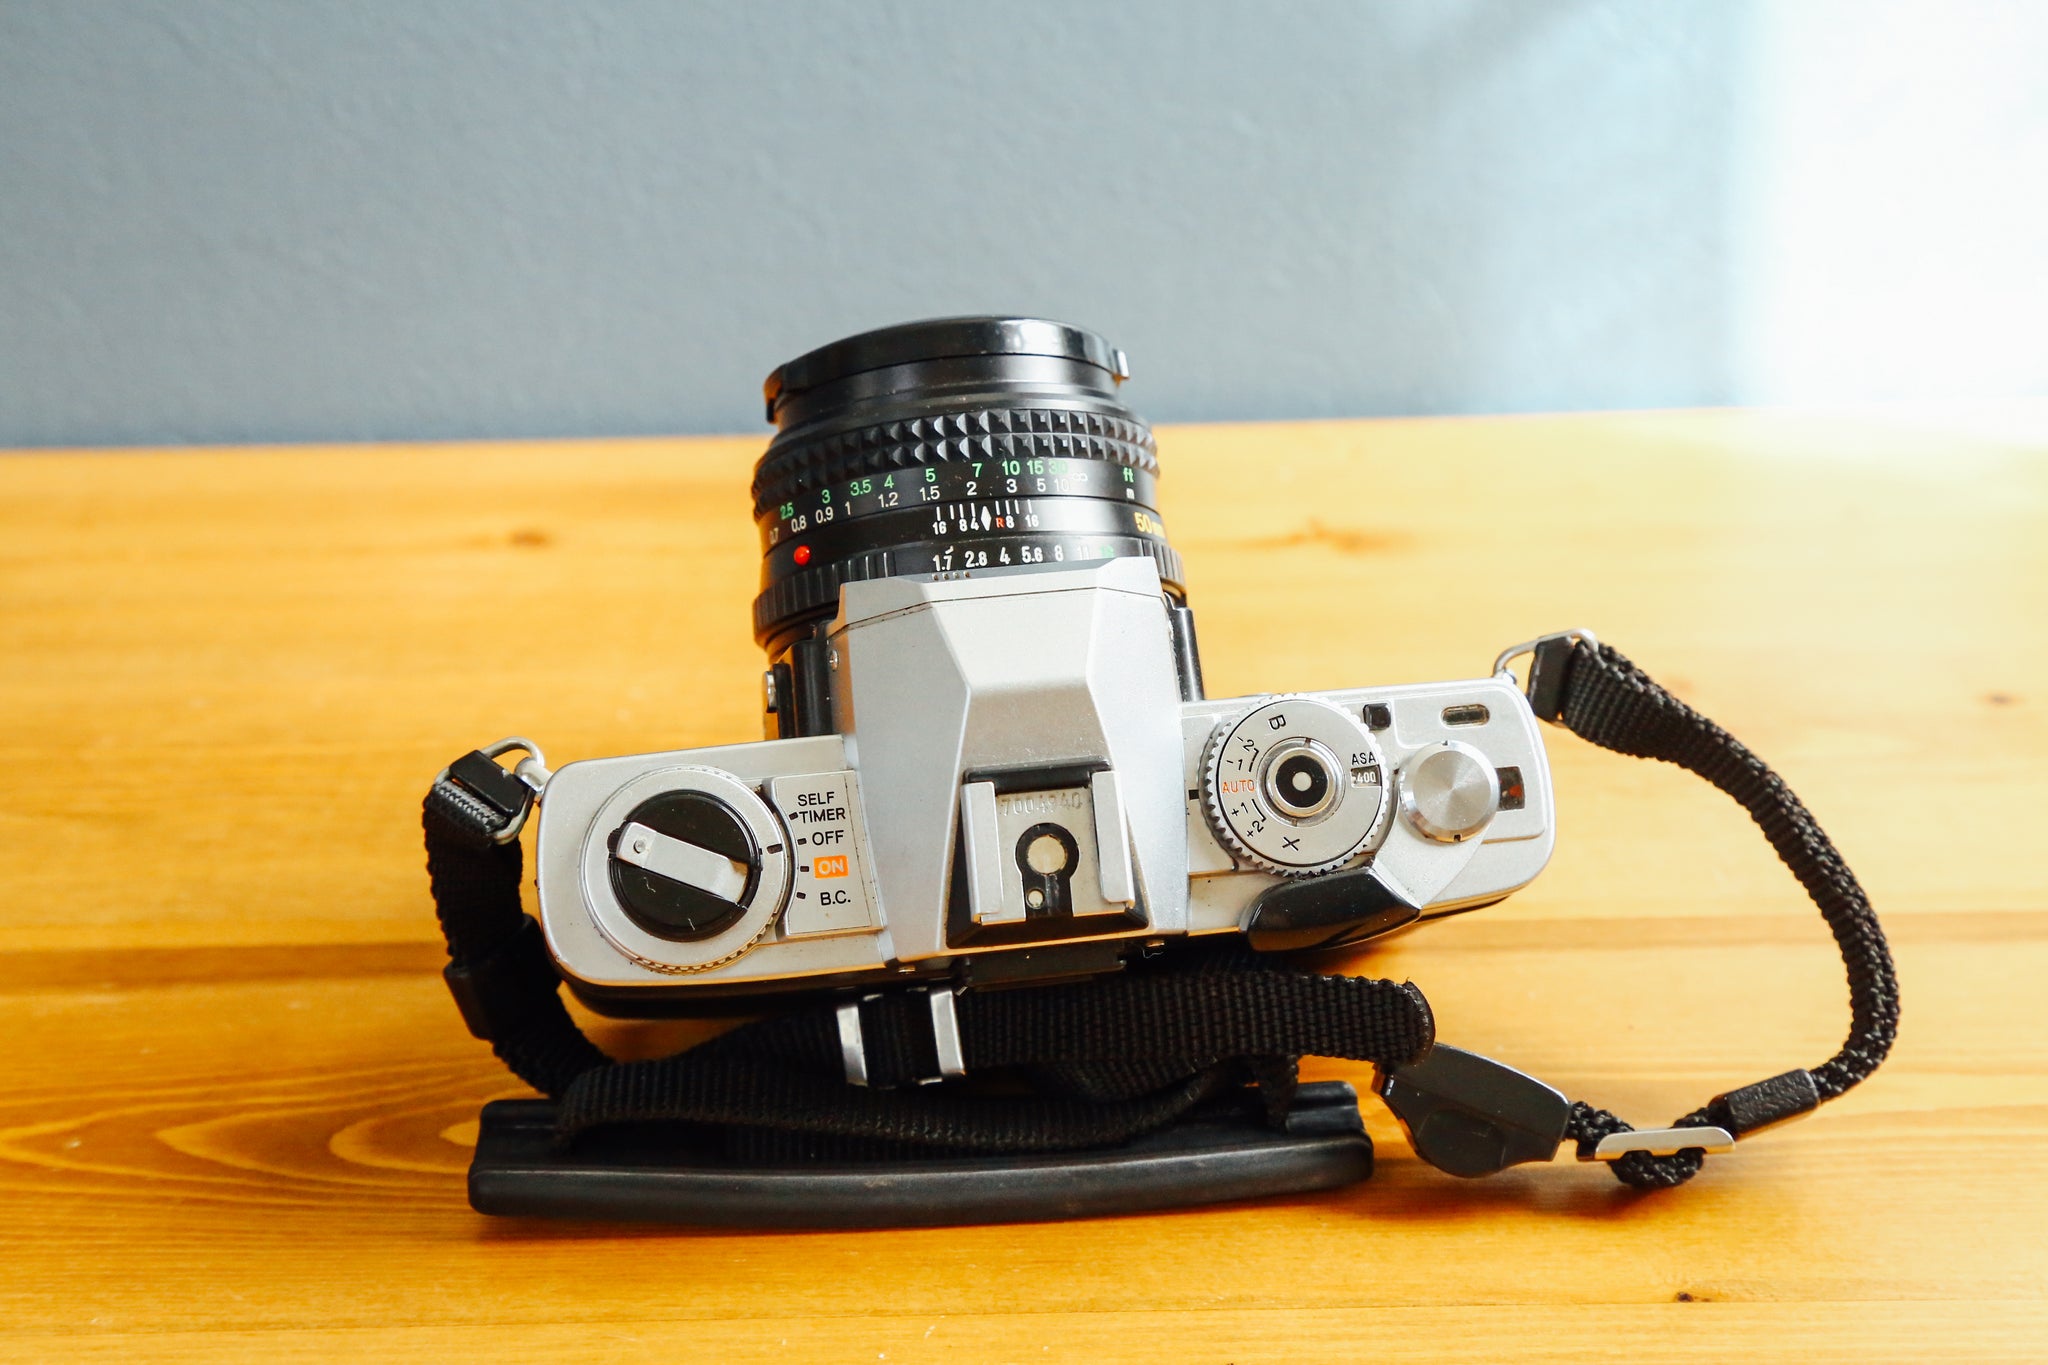 Minolta X-7【完動品】 – Ein Camera